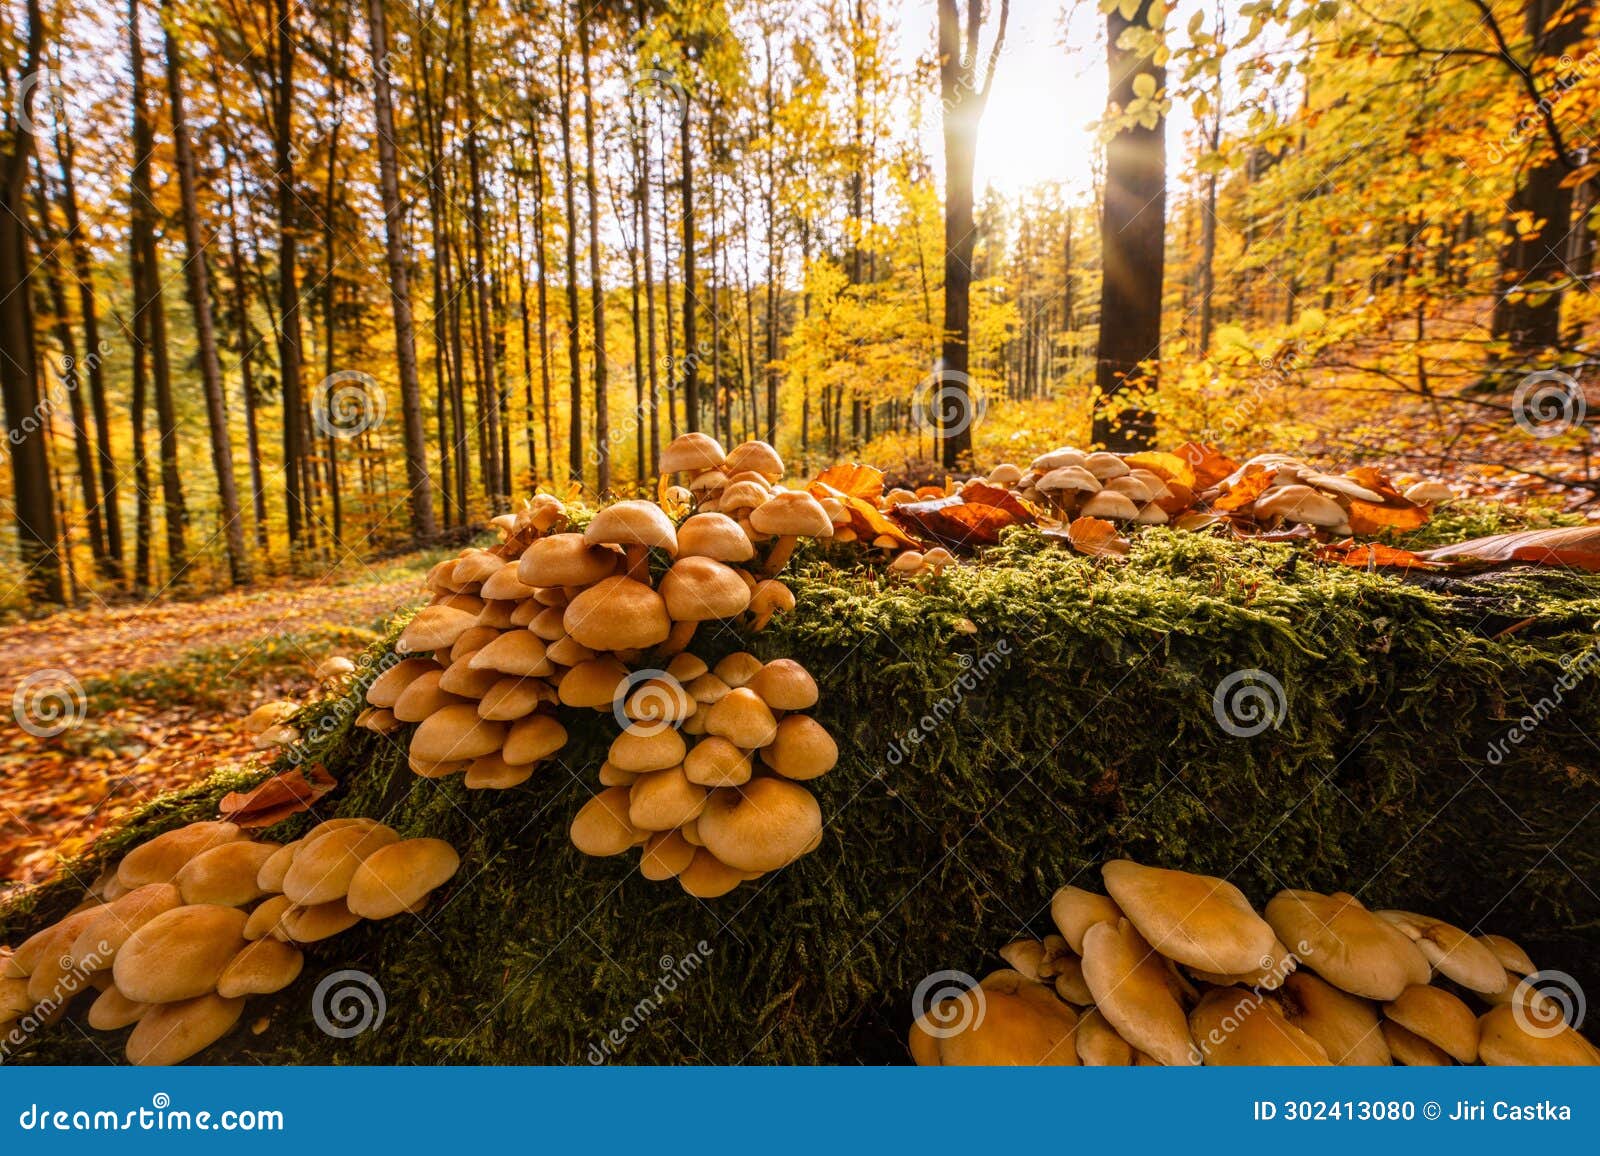 autumn in jizera mountains, jizerskohorske buciny, unesco site